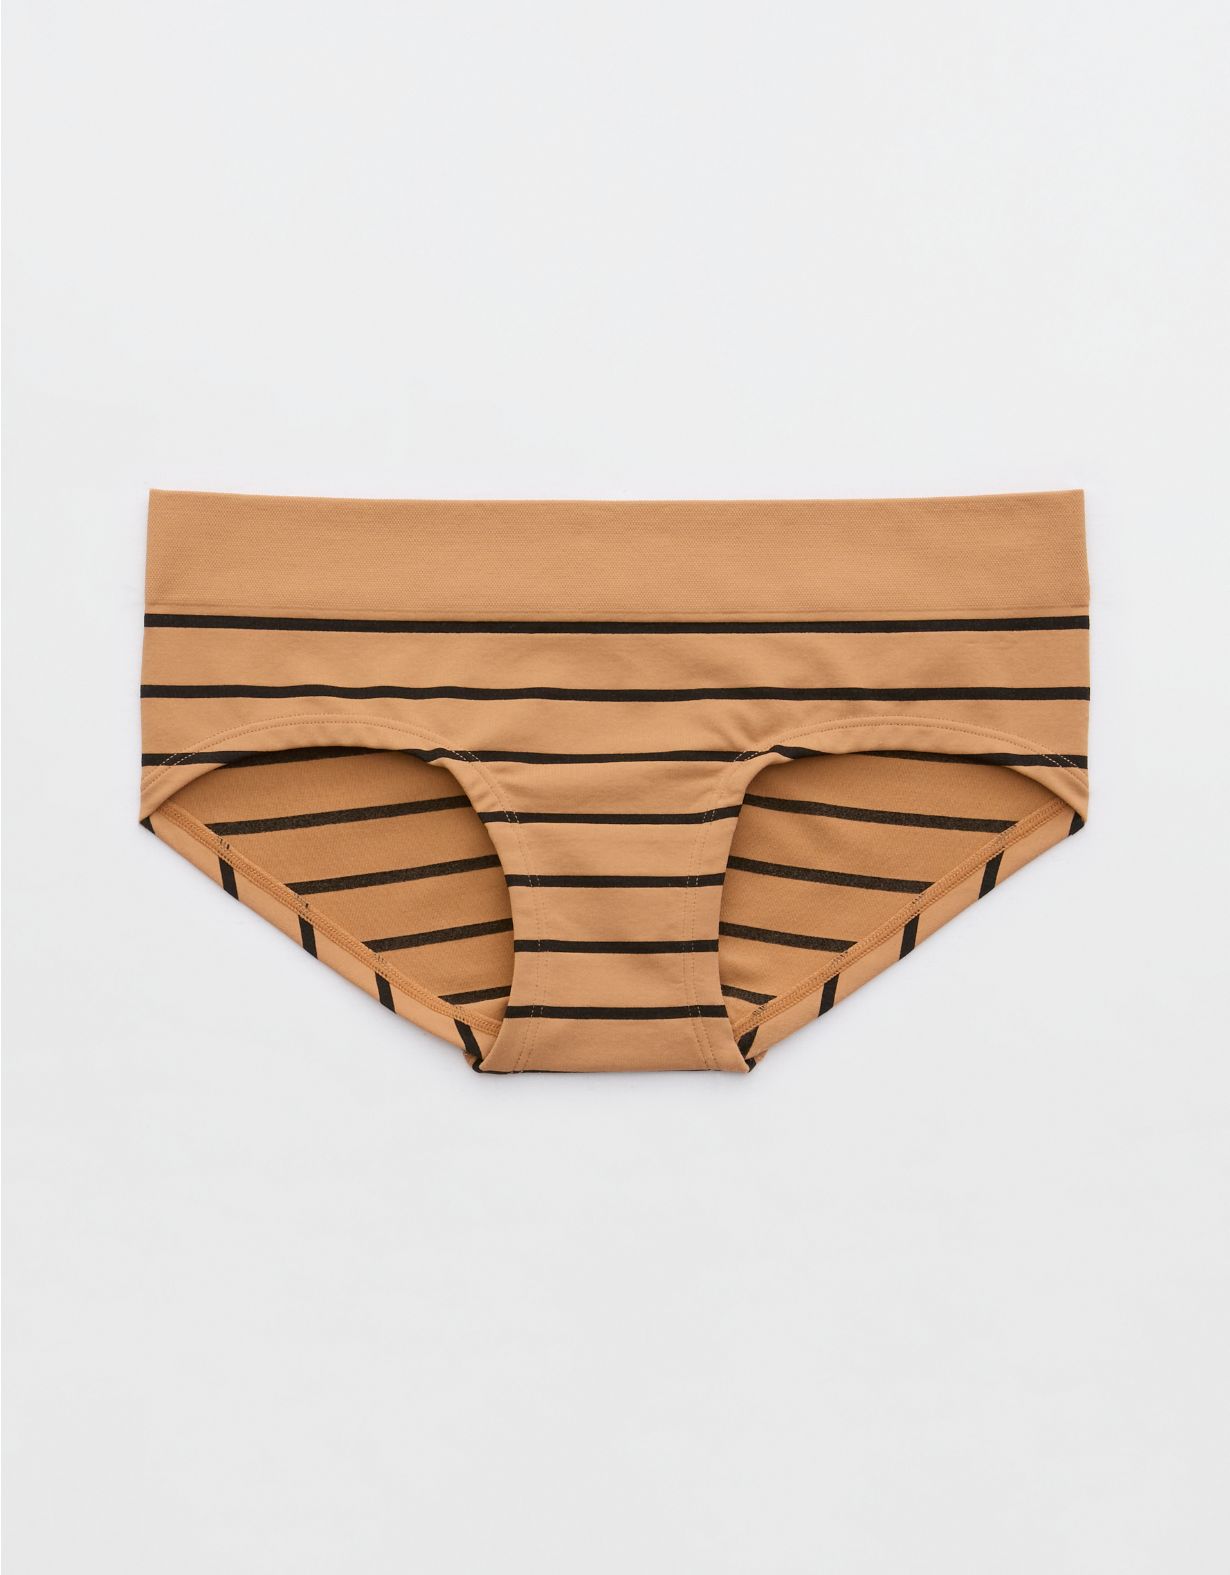 Superchill Seamless Stripe Boybrief Underwear